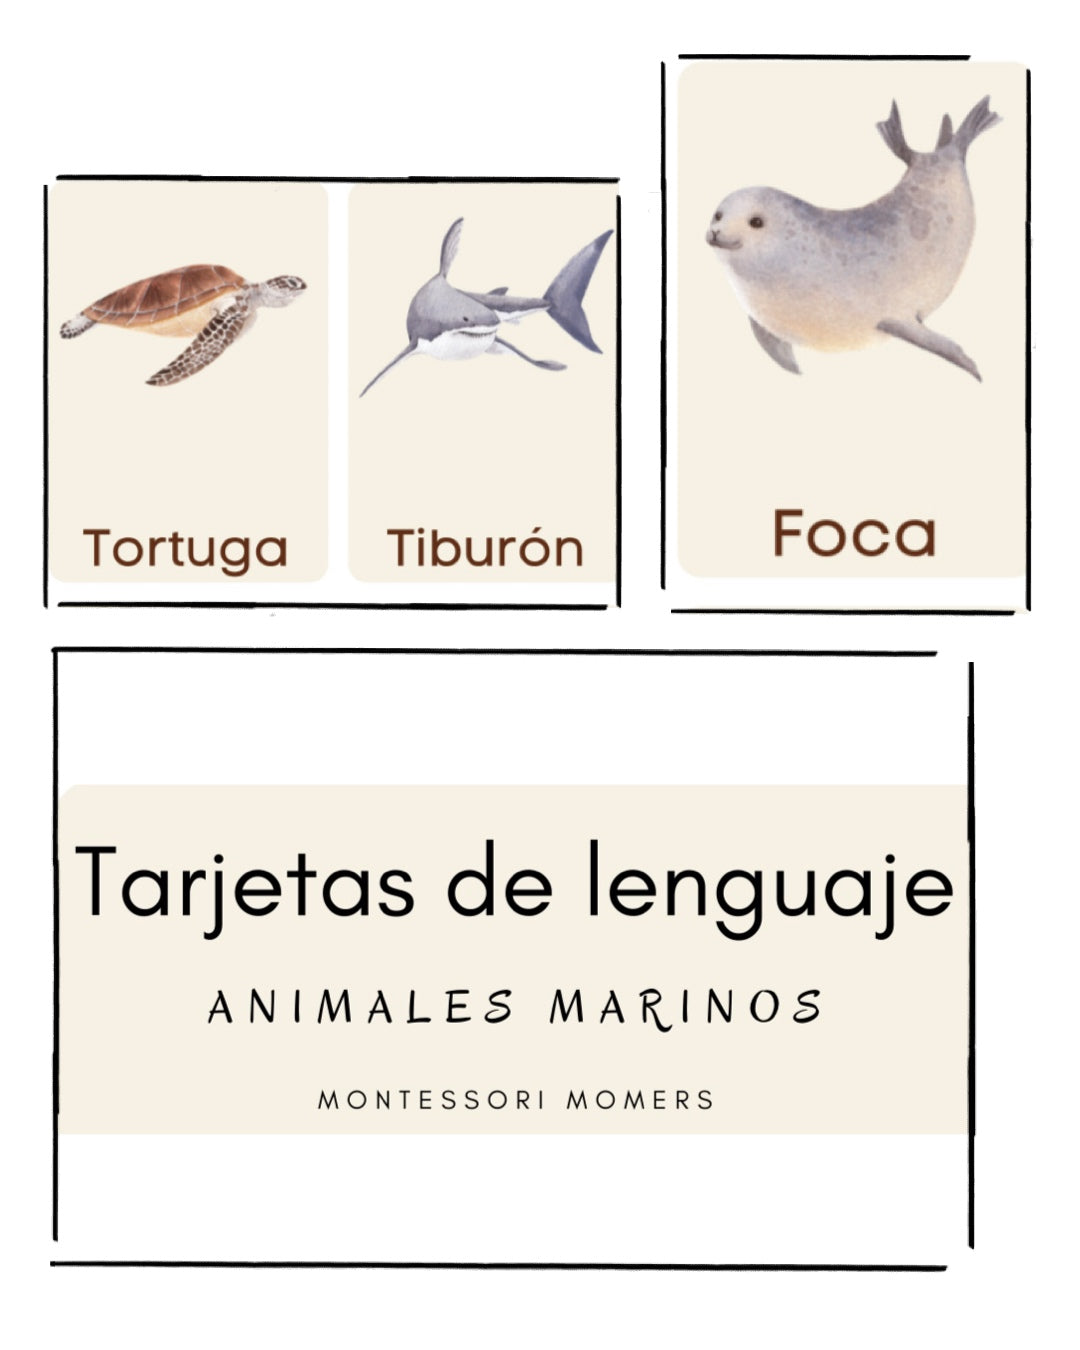 Tarjetas de lenguaje en tres partes: los animales marinos